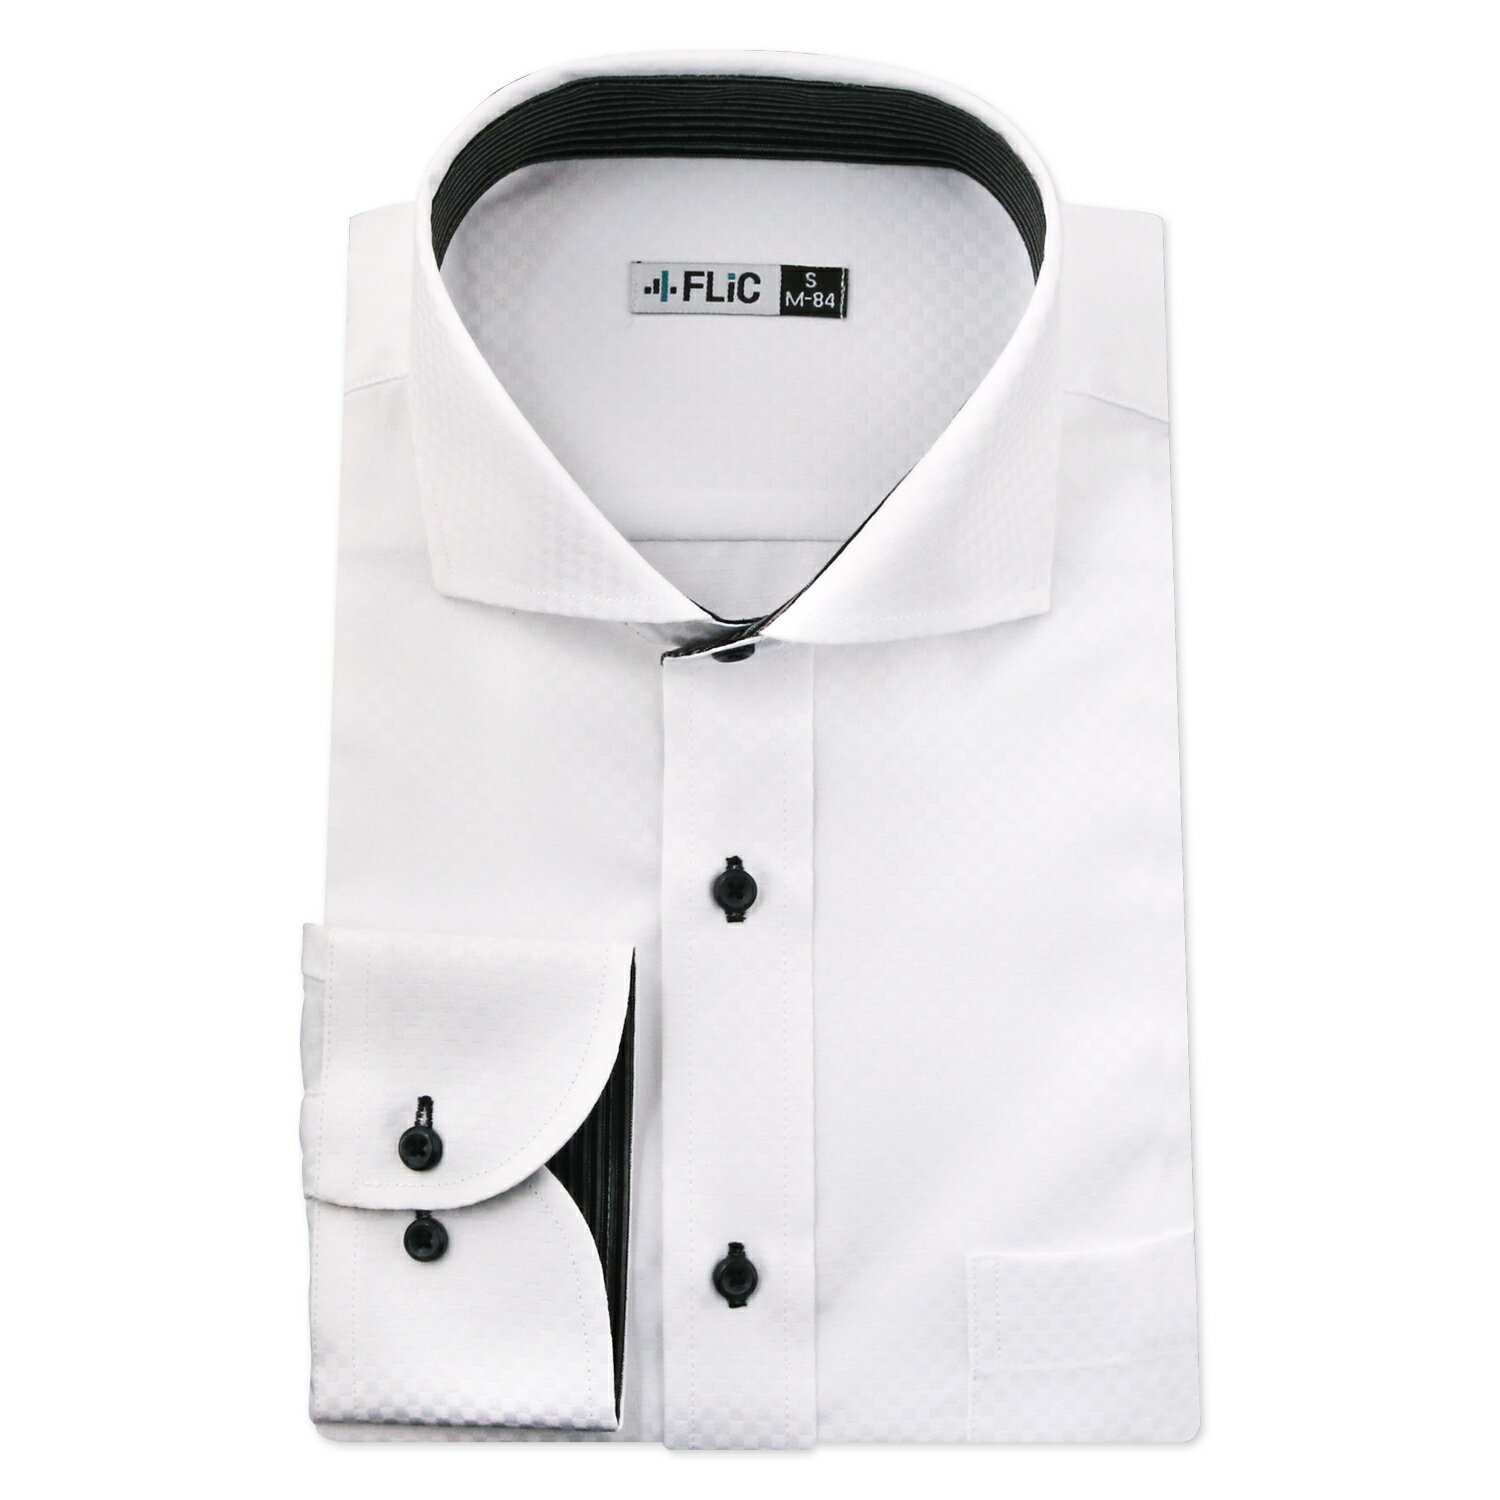 ワイシャツ メンズ ボタンダウン 長袖 形態安定 シャツ ドレスシャツ ビジネス